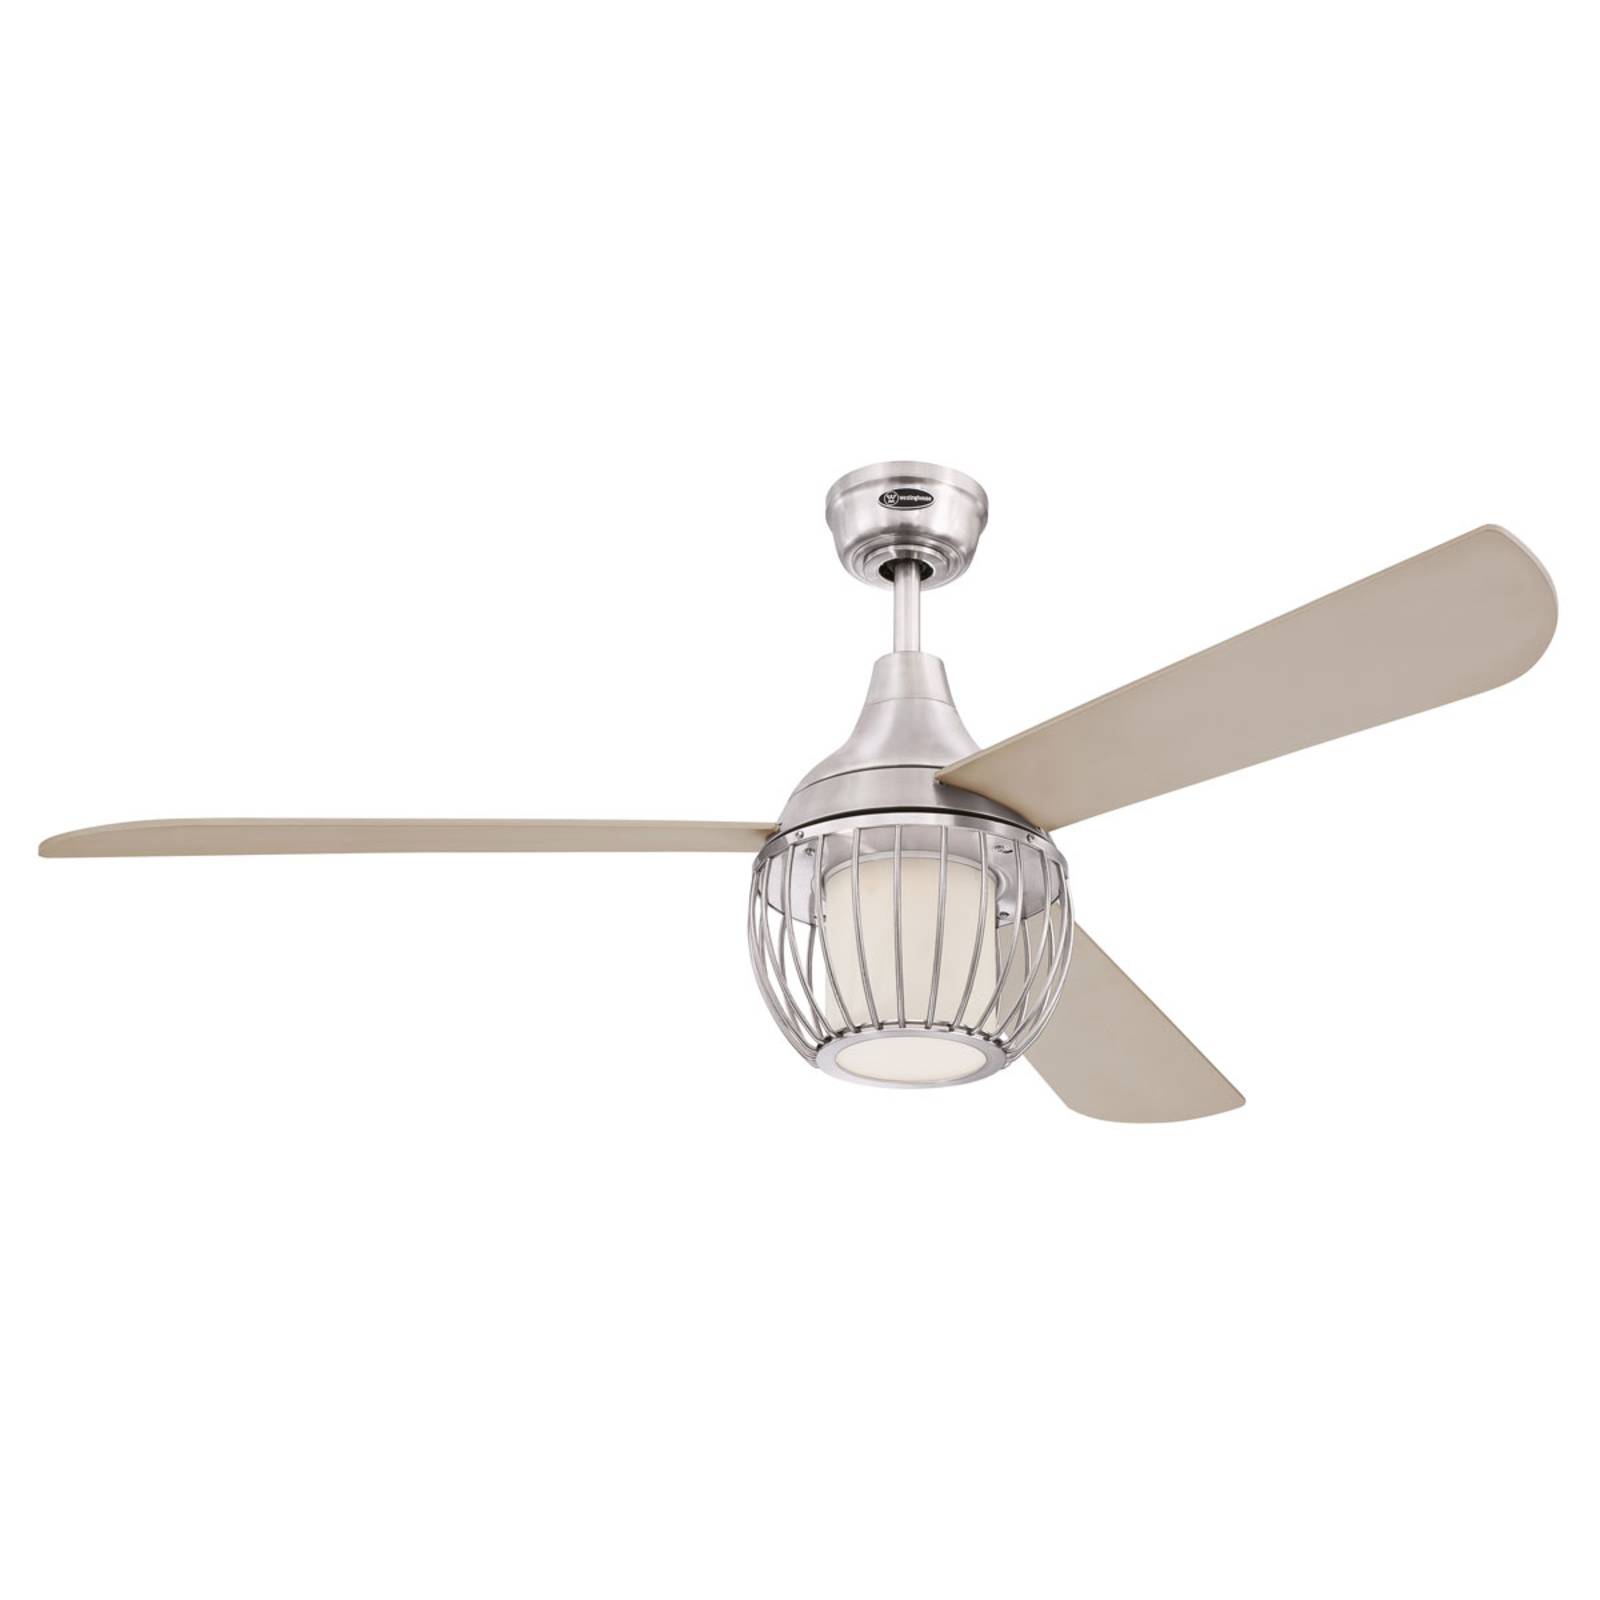 Westinghouse Graham ceiling fan, nickel